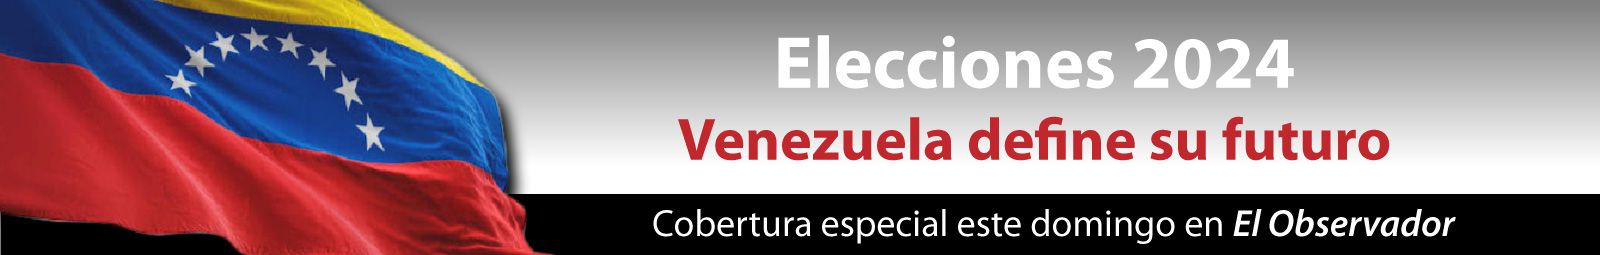 Elecciones Venezuela 2024 Desktop